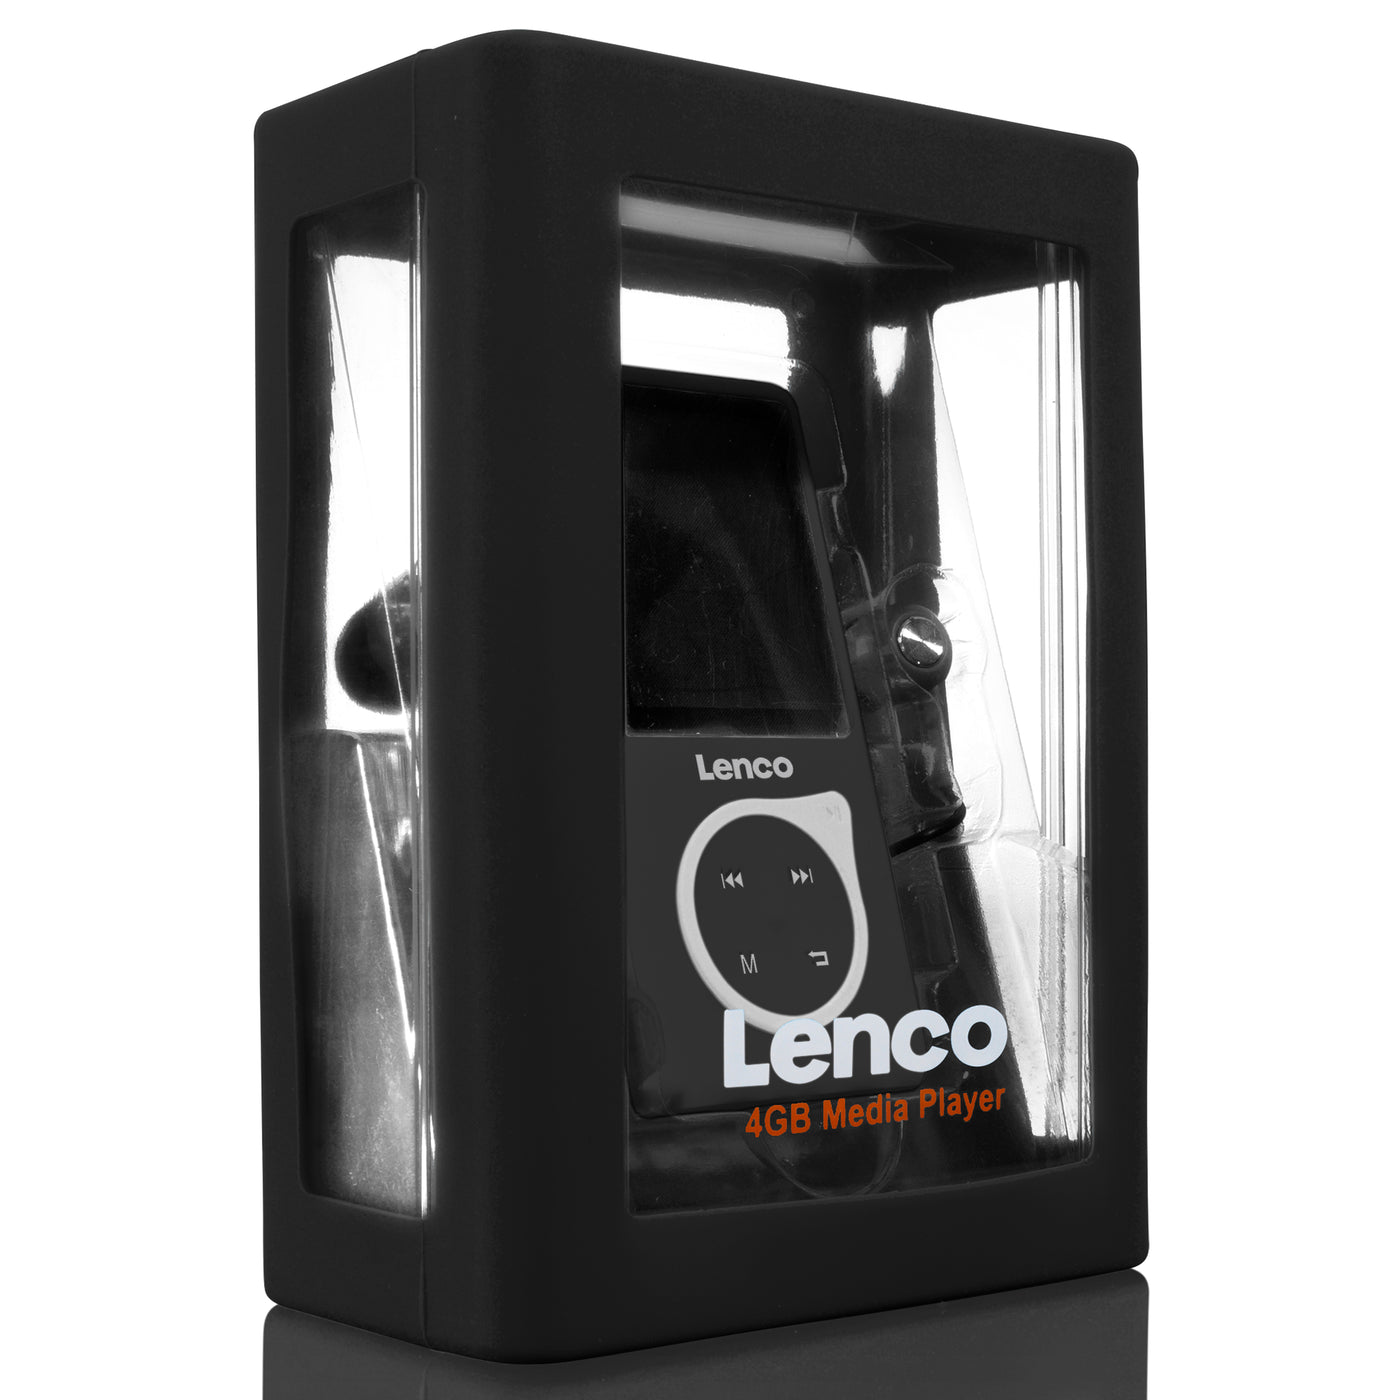 LENCO Xemio-668 Black - MP3/MP4 player Incl. 8GB micro SD card - Black